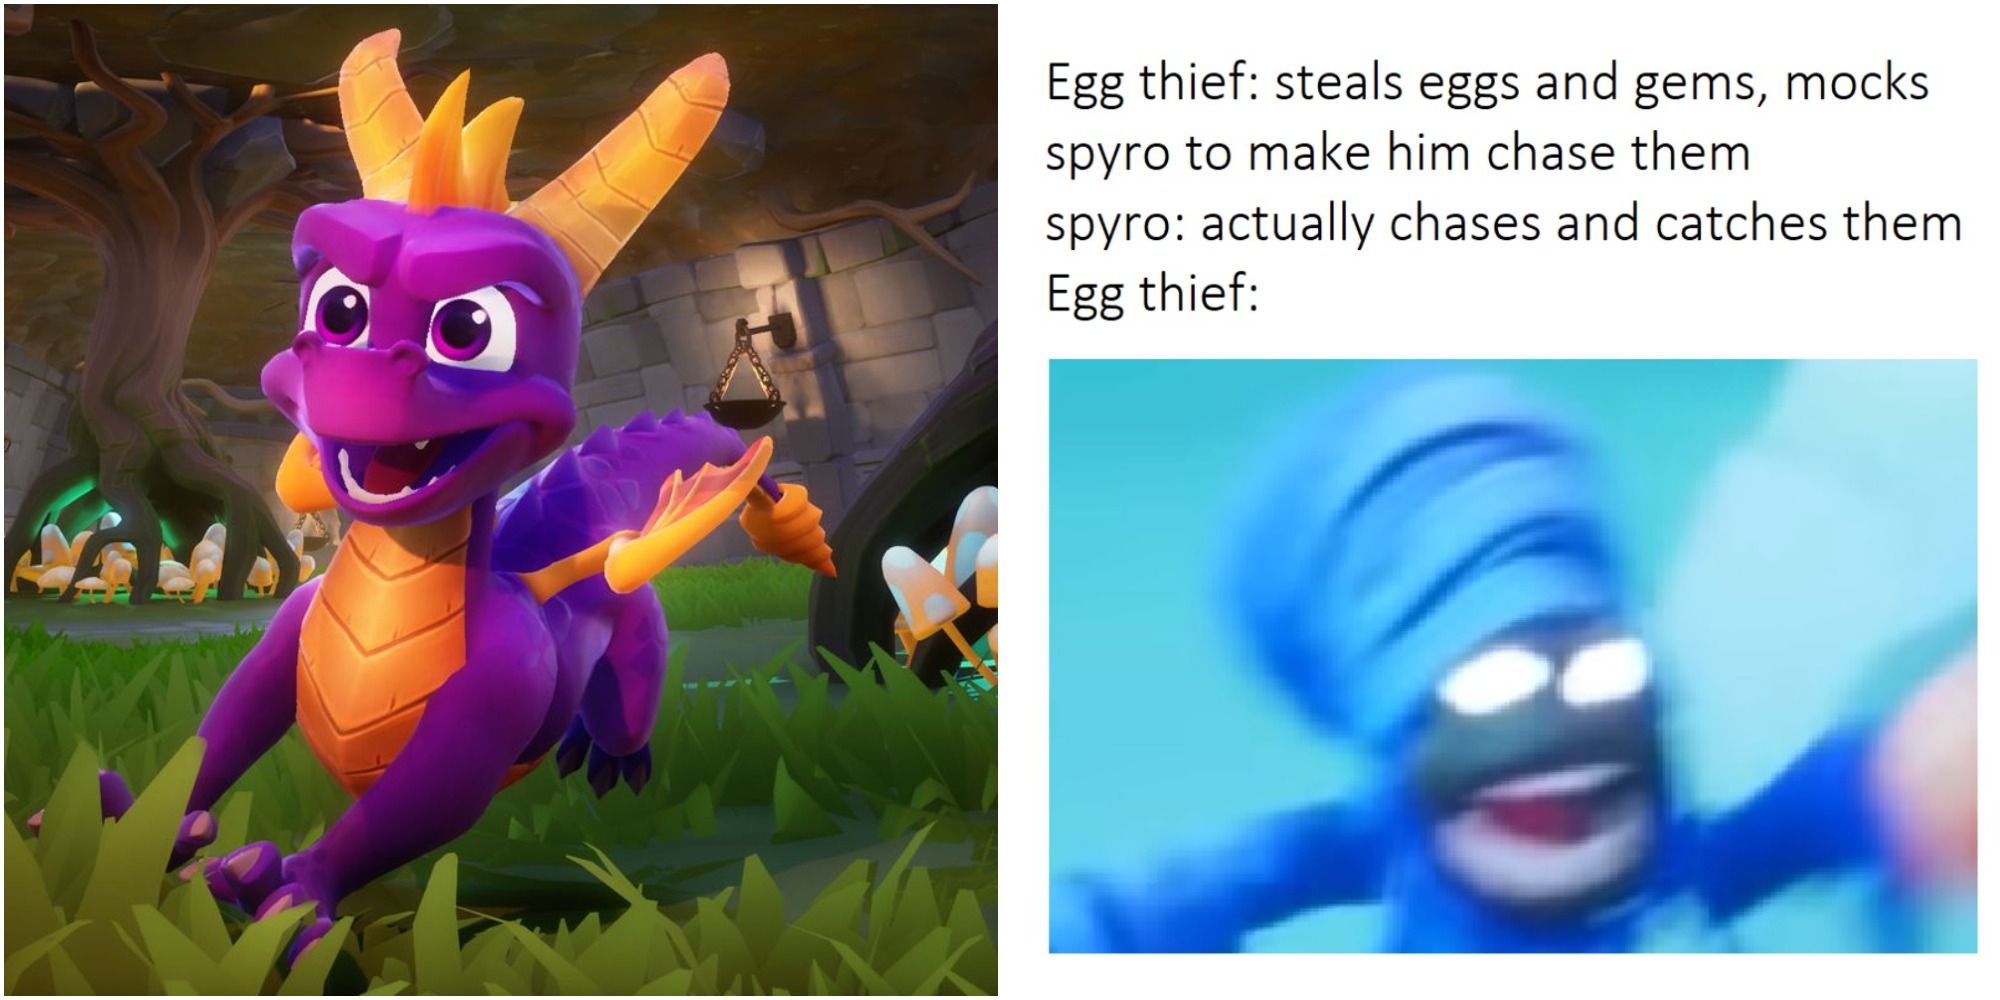 spyro the dragon egg thief